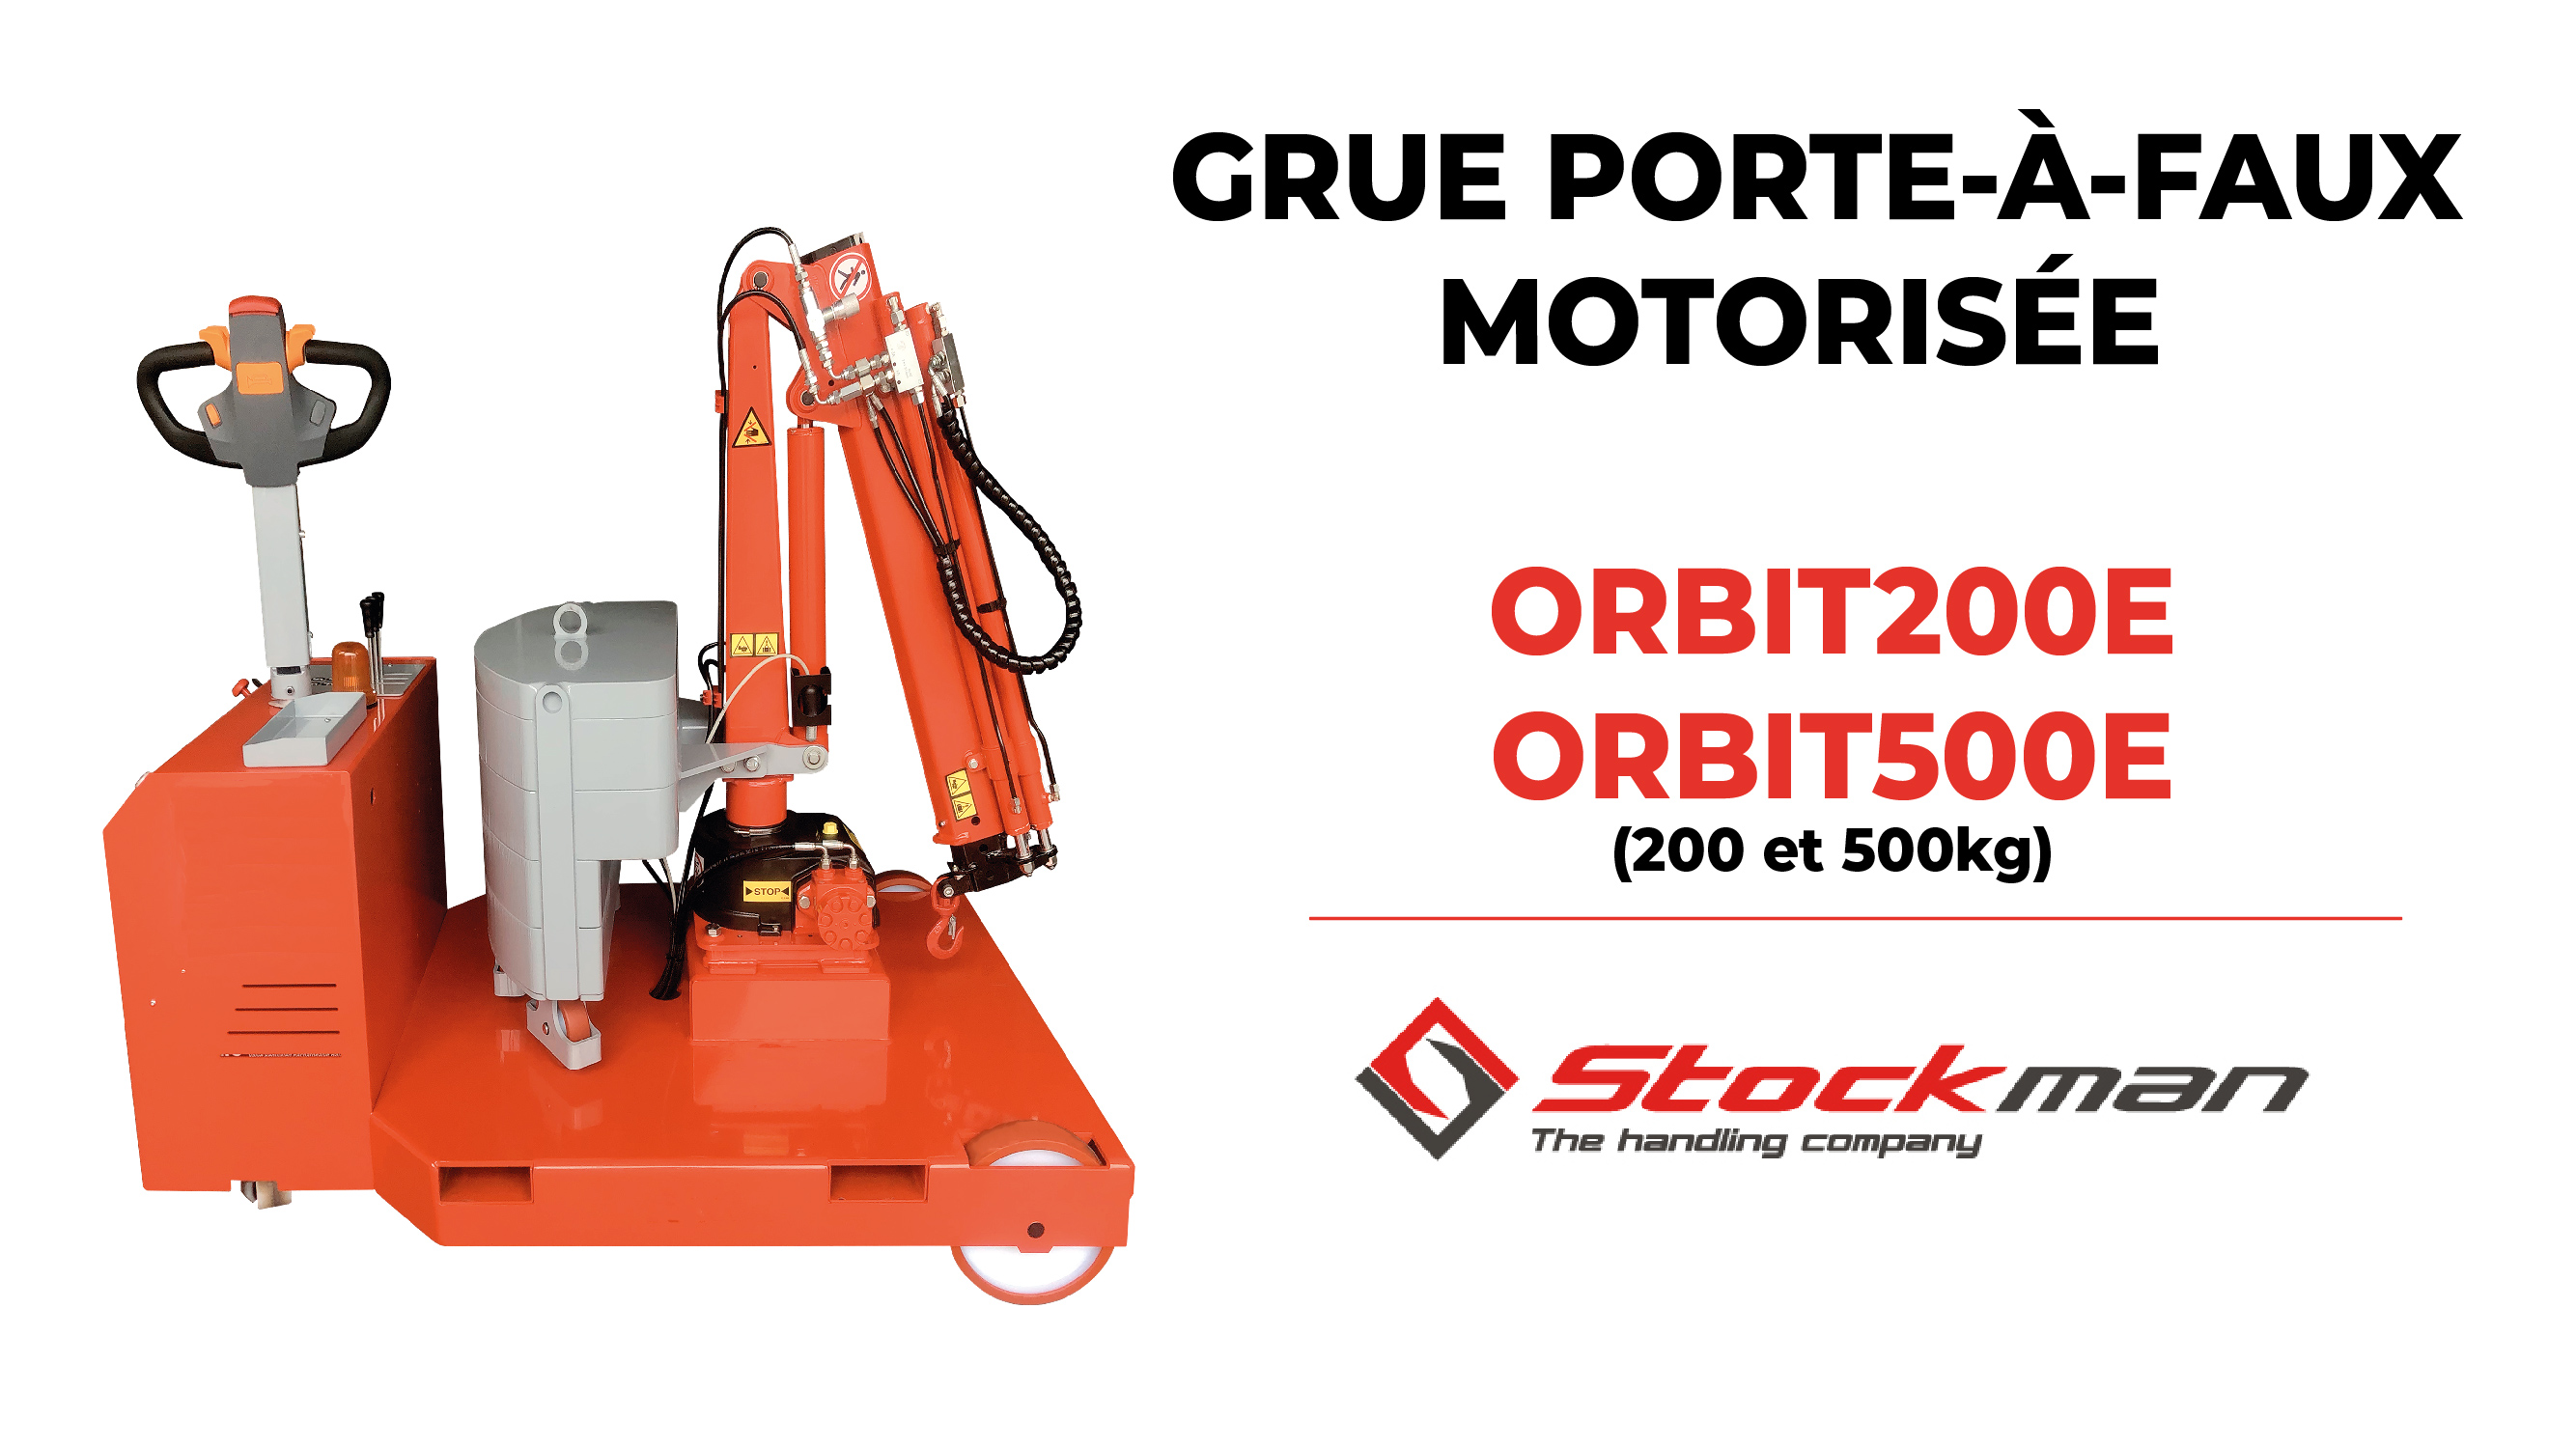 La grue ORBIT : porte-à-faux rotative motorisée pour des charges de 200 et 500?kg